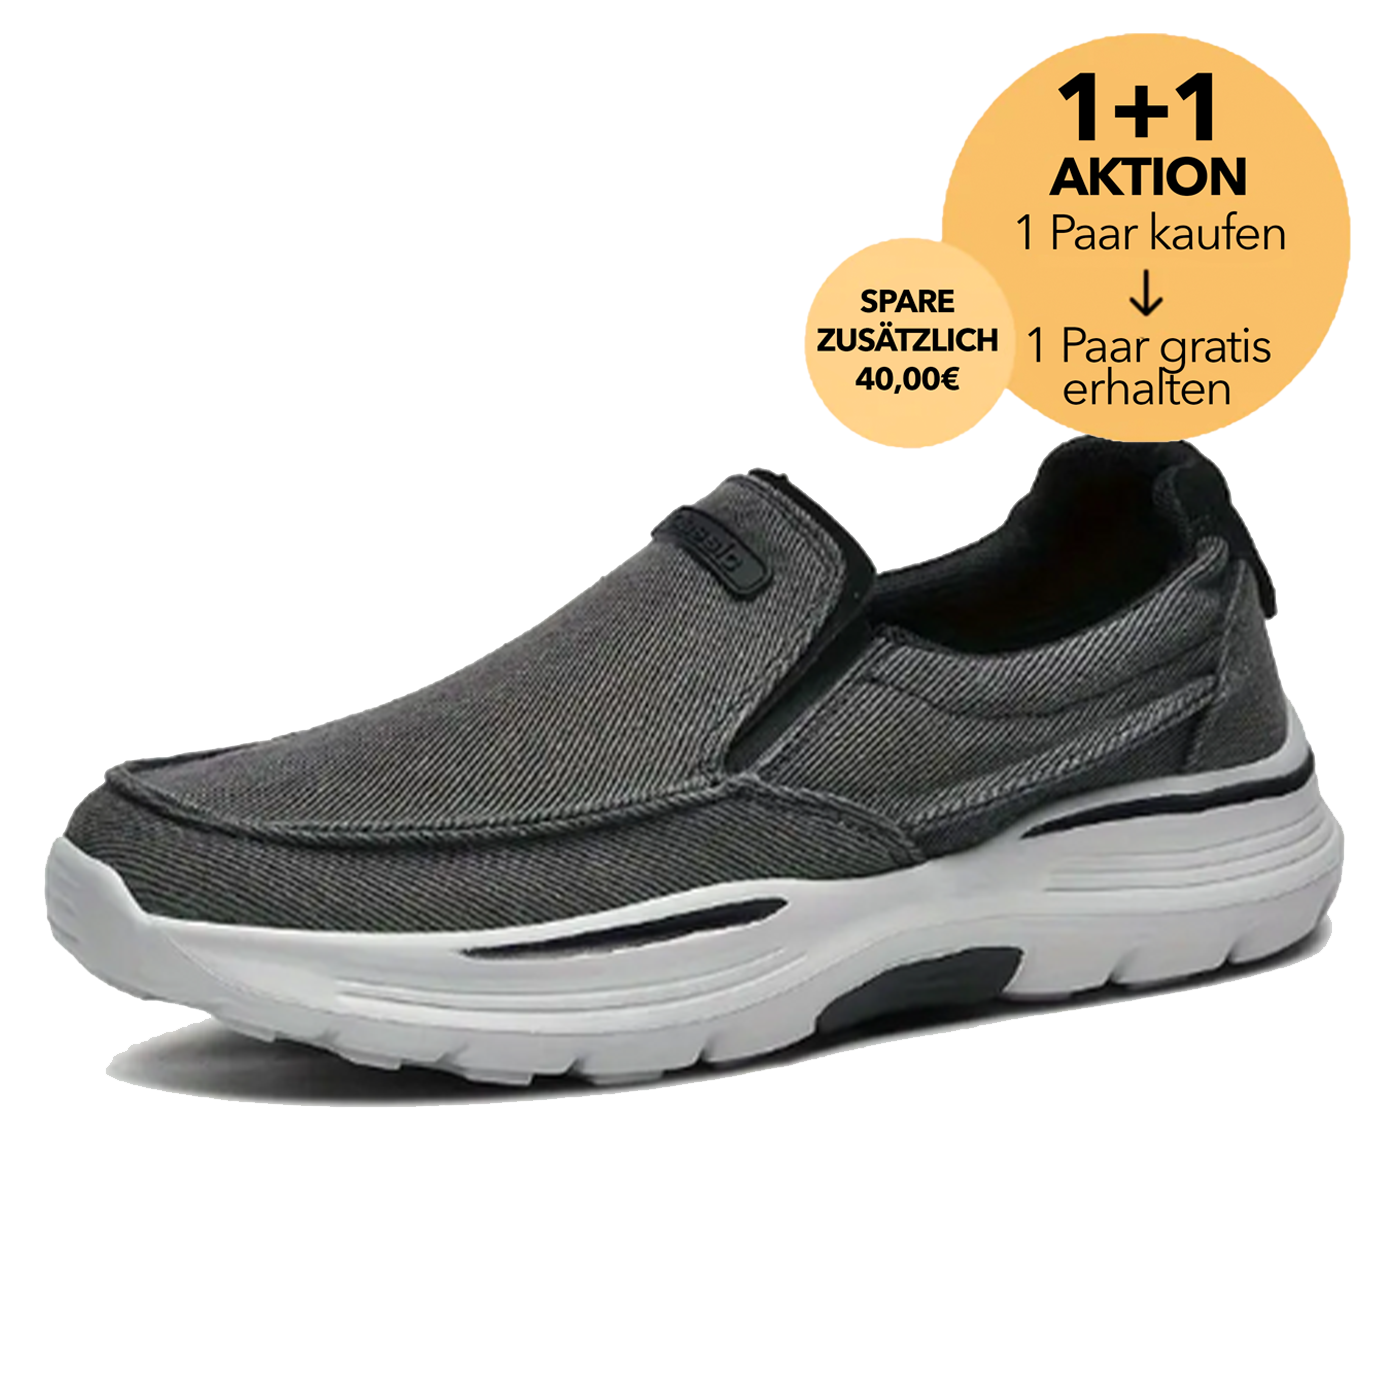 (1+1 GRATIS AKTION) OrthoWohl 2.0 - stilvoller Orthopädischer Schuh für ergonomische Schmerzlinderung